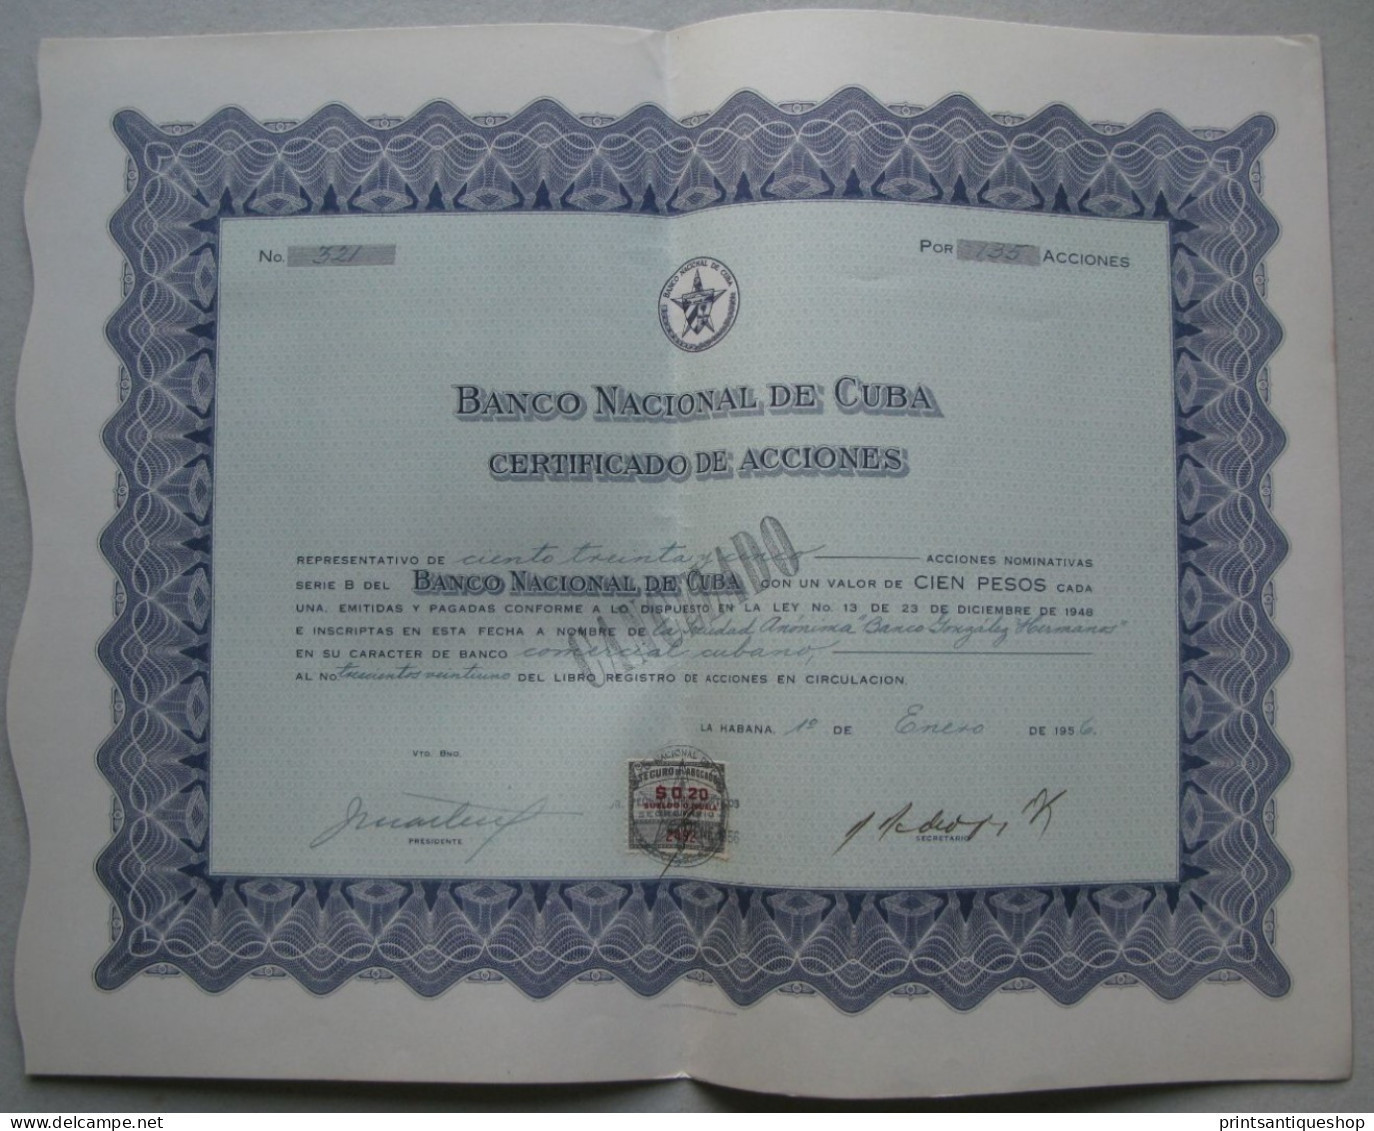 1956 Banco Nacional De Cuba Emprunt Aktie Obligation Bond BONO Certificate $100 Habana Havana In Spanish - Banco & Caja De Ahorros